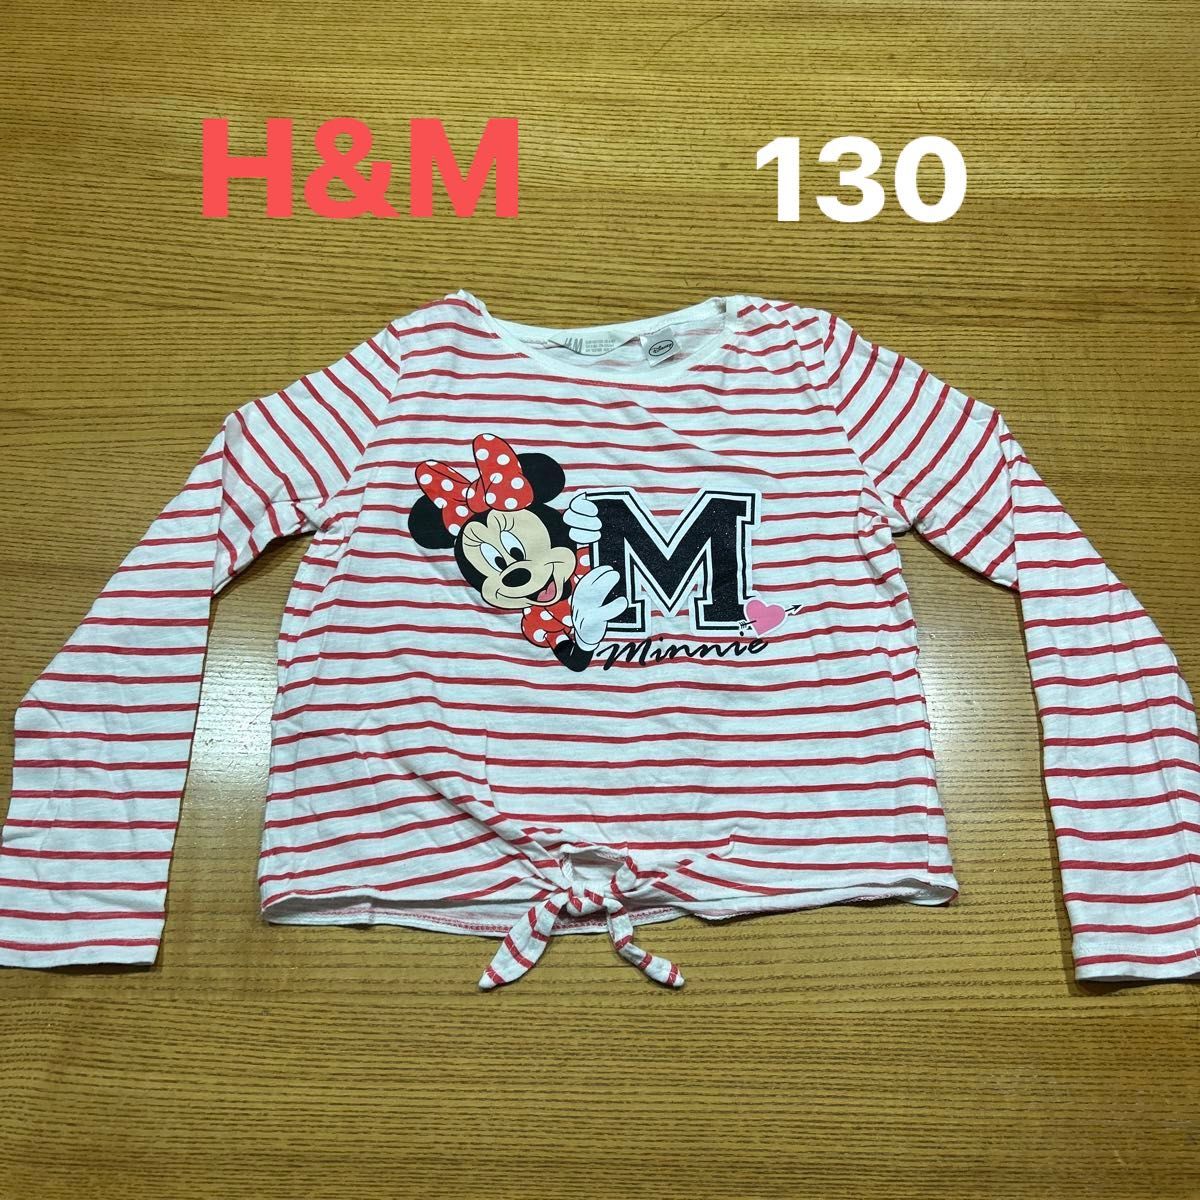 【H&M】(USED)ミニーちゃん 赤&白 ボーダー 丈短め 長袖Tシャツ 裾を結ぶデザイン 122/128(130cm)